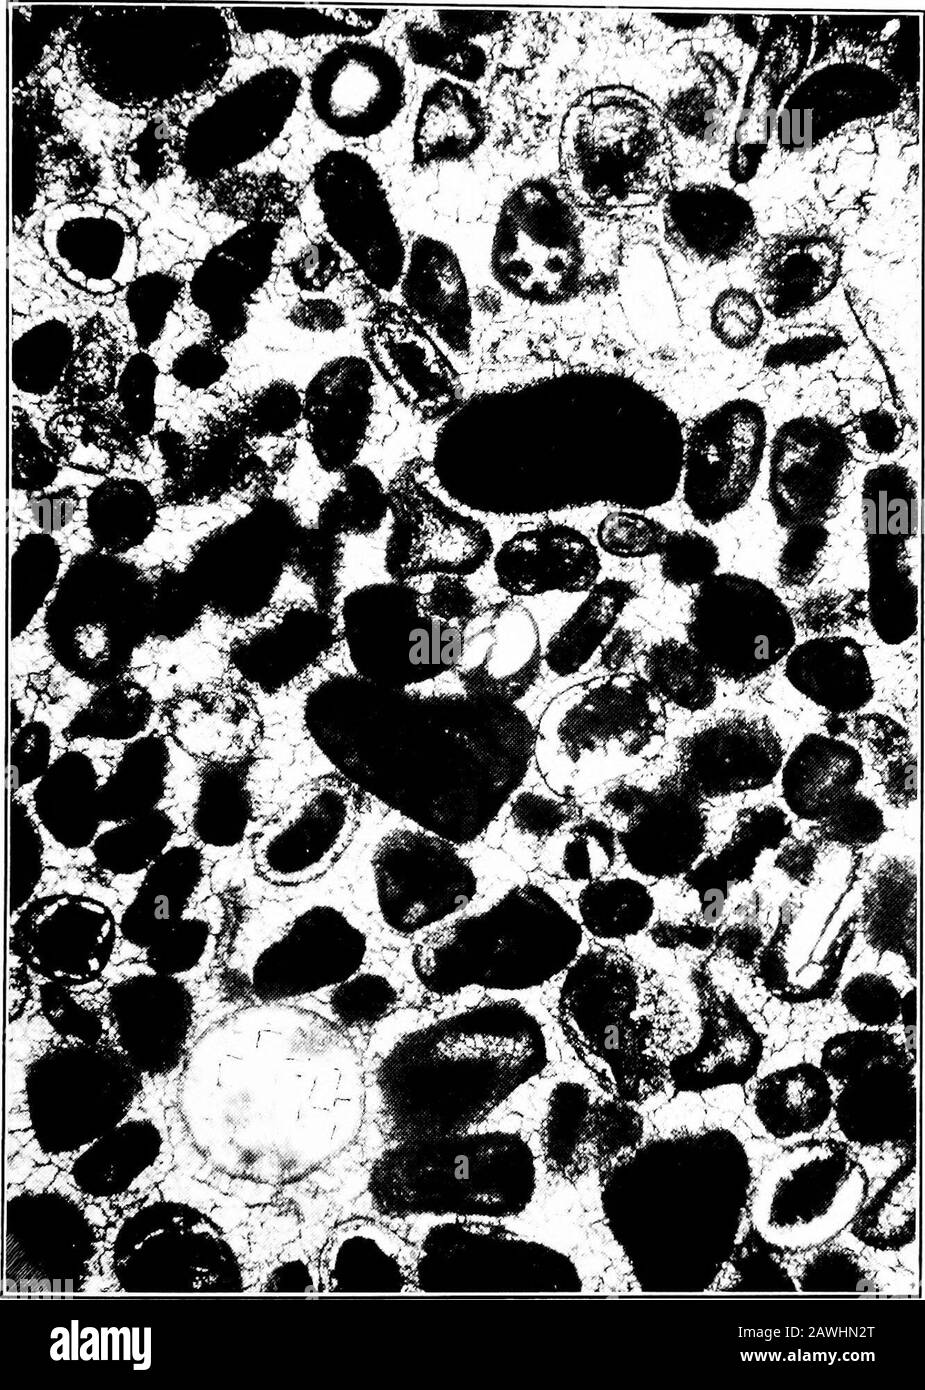 Das tiefe Bohren bei Spur . Platte 5. Vertikaler Abschnitt eines Dolomits,  der die Umrisse zahlreicher organischer Bruchstücke kleiner Größe zeigt,  die in eine Matrix von gröberem kristallinem Dolomit eingebettet sind. Die